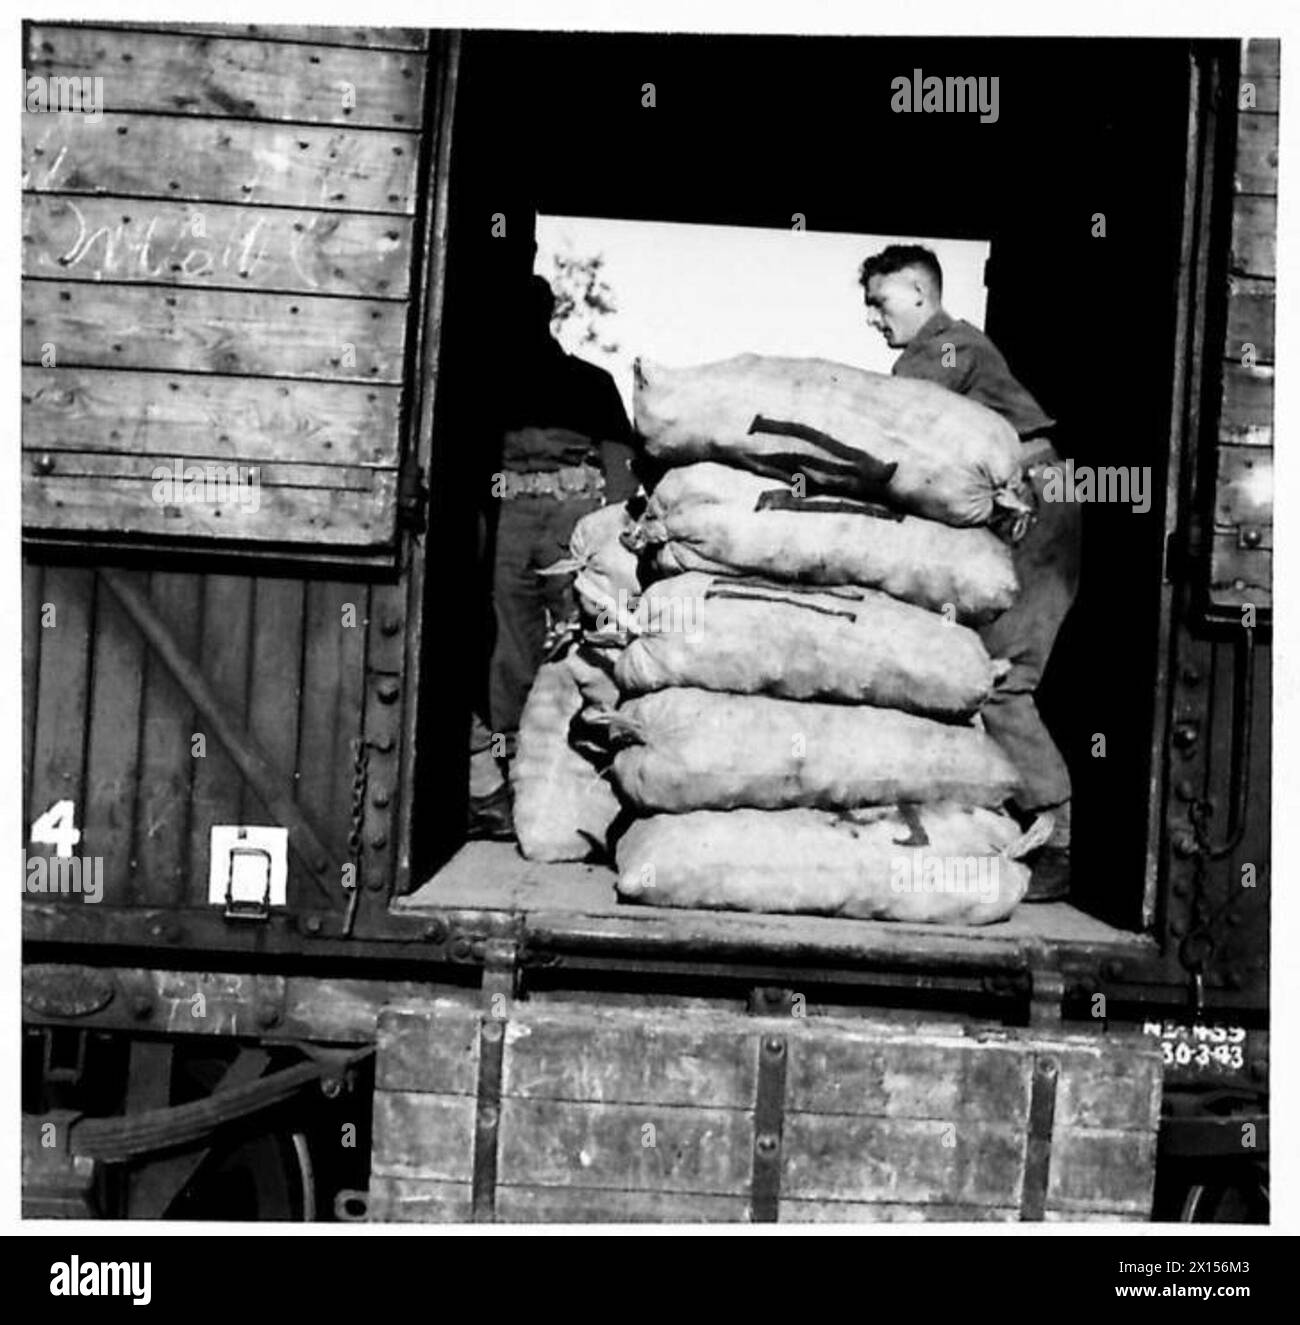 La RASC PARTECIPA ALL'ESERCITAZIONE DI COMANDO ORIENTALE - scaricando sacchi di patate presso la stazione ferroviaria British Army Foto Stock